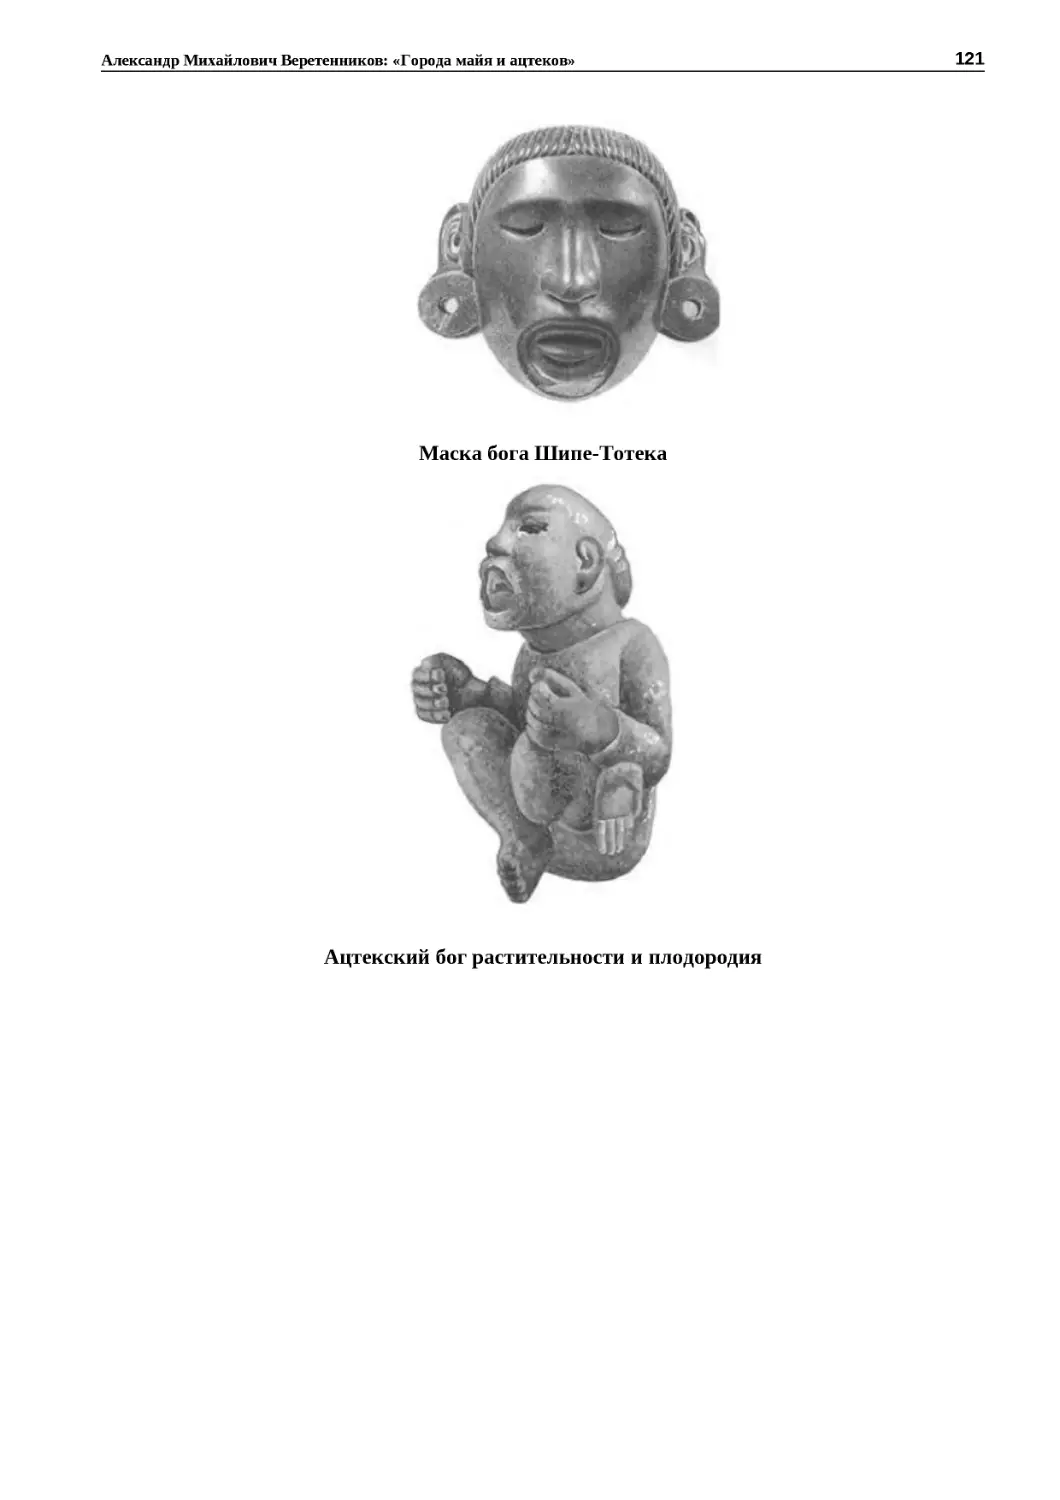 ﻿Маска бога Ӹипе‑Тотек
"
﻿Ацтекский бог растительности и плодороди